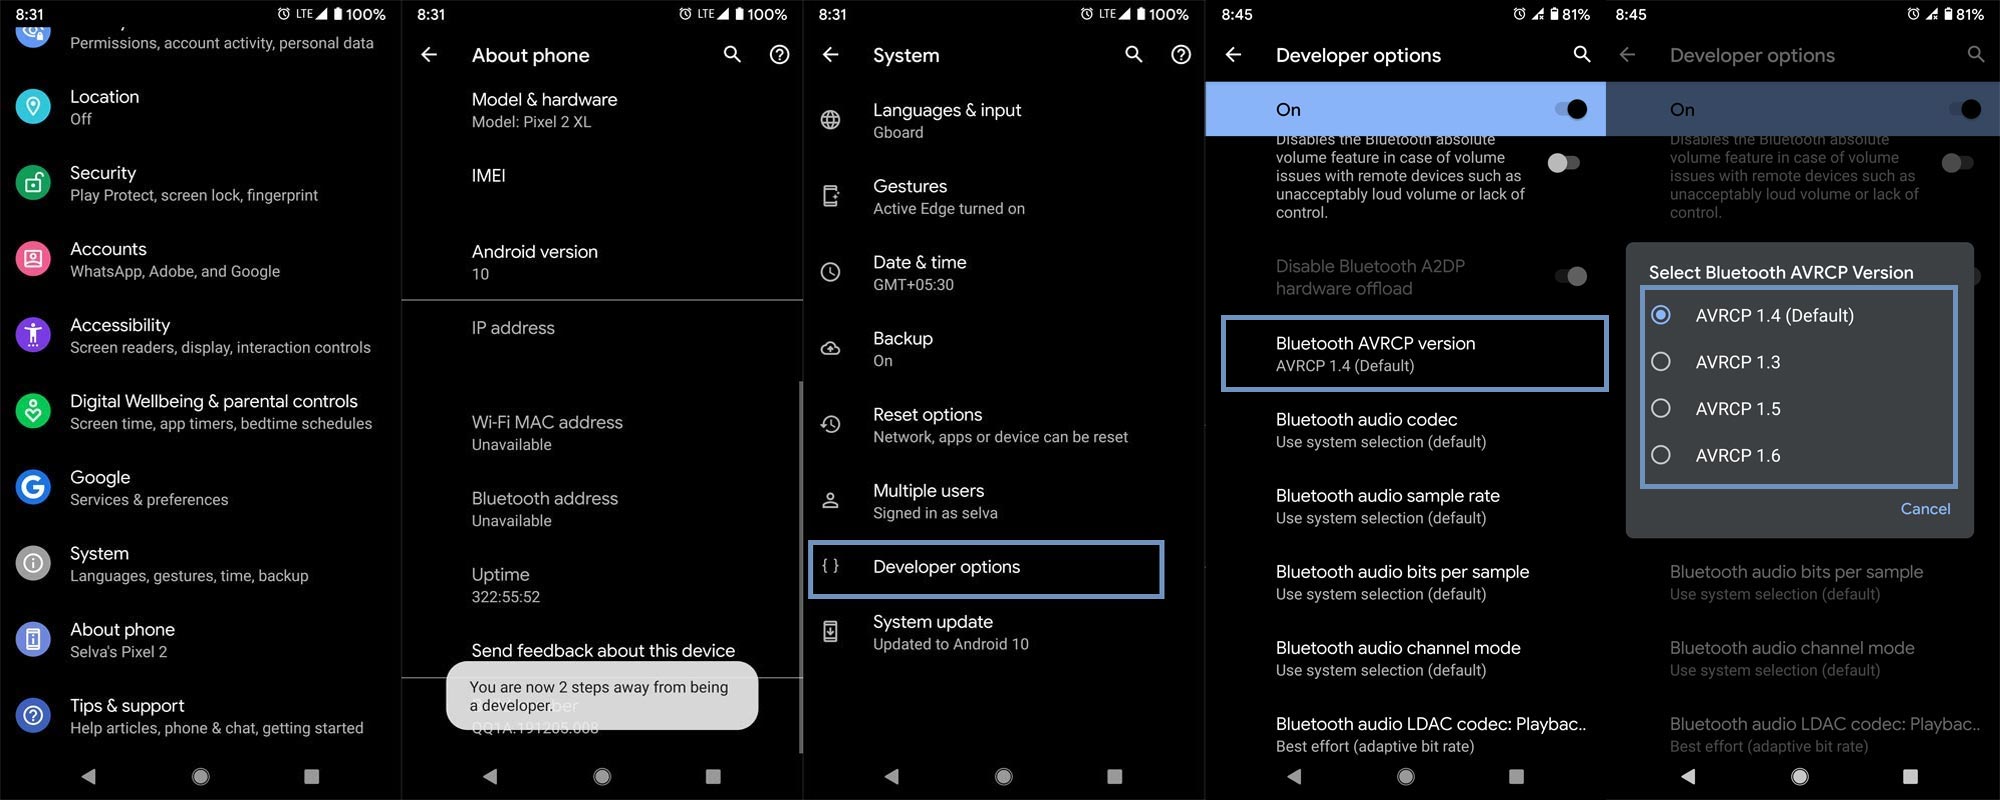 Cambiar la versión de Bluetooth AVRCP Android